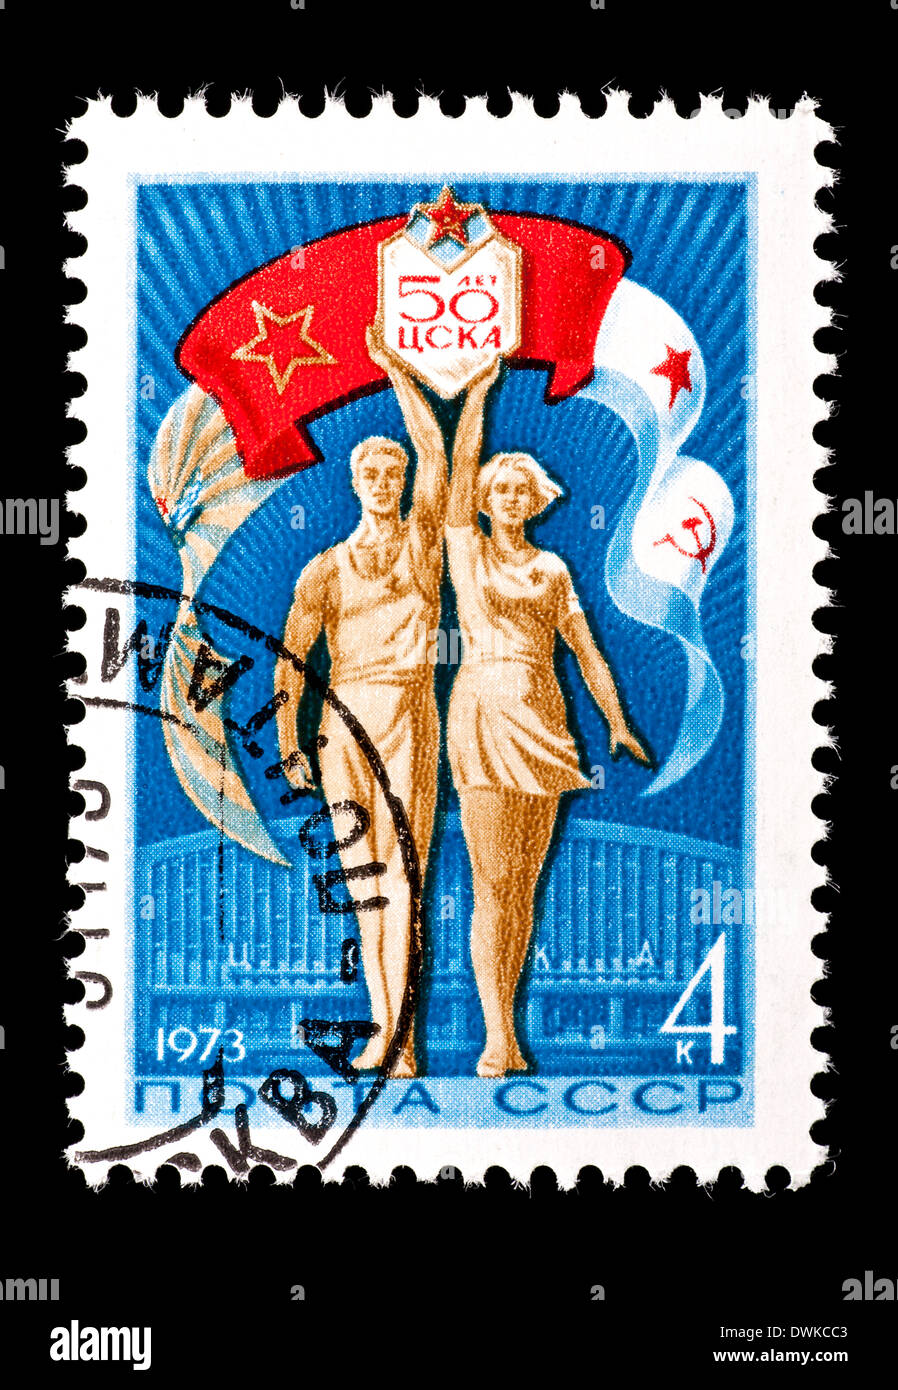 Timbre-poste de l'Union soviétique représentant les athlètes et les bannières de l'air, les forces de terre et de mer. Banque D'Images